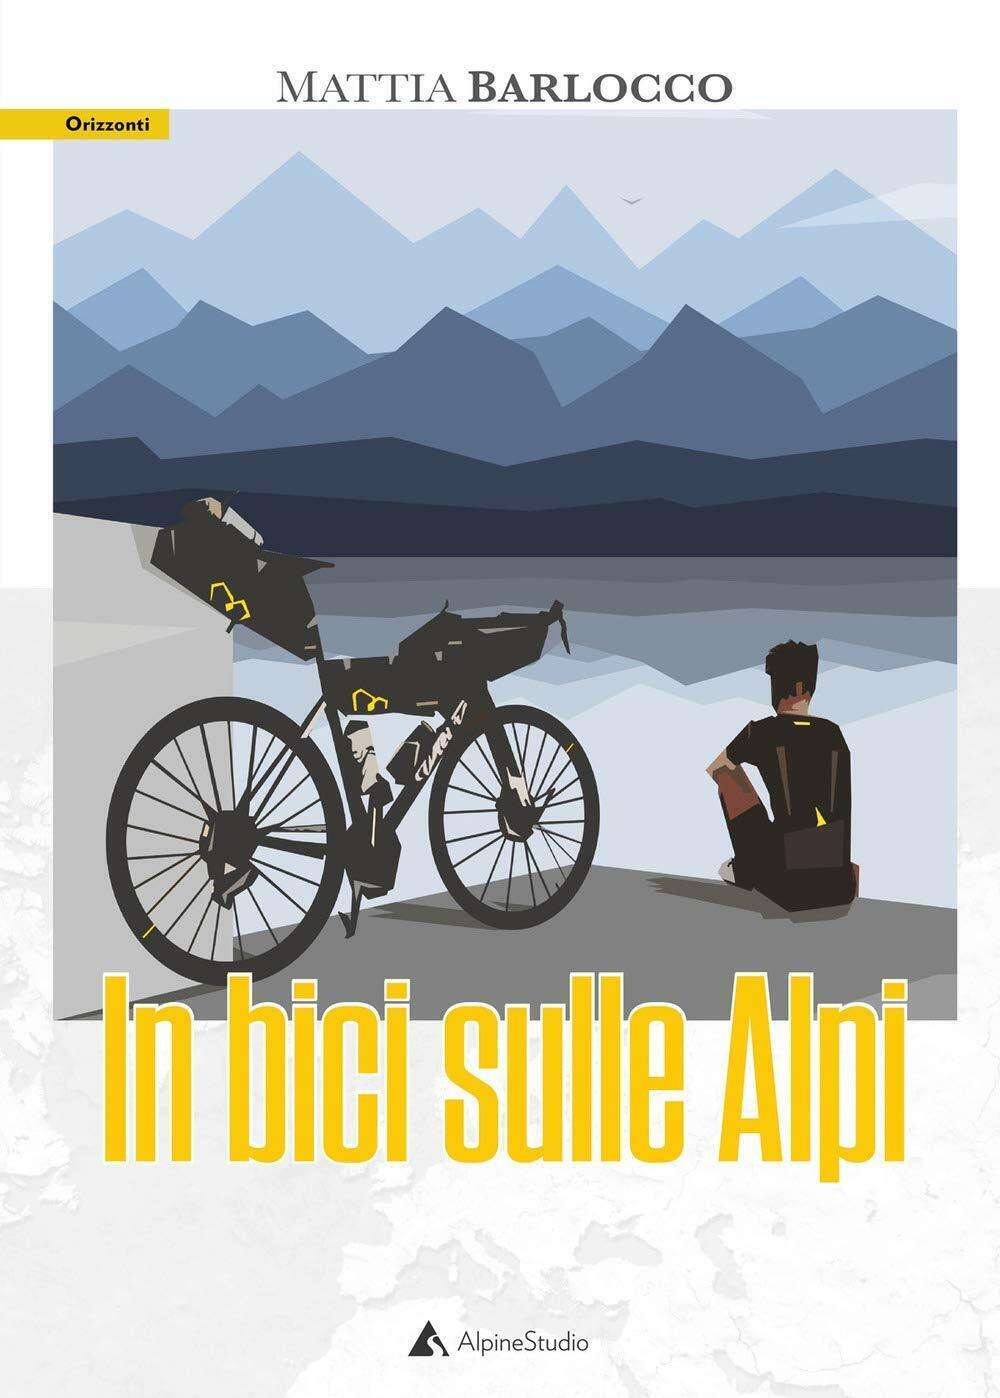 In bici sulle alpi - Mattia Barlocco - Alpine Studio, 2020 libro usato